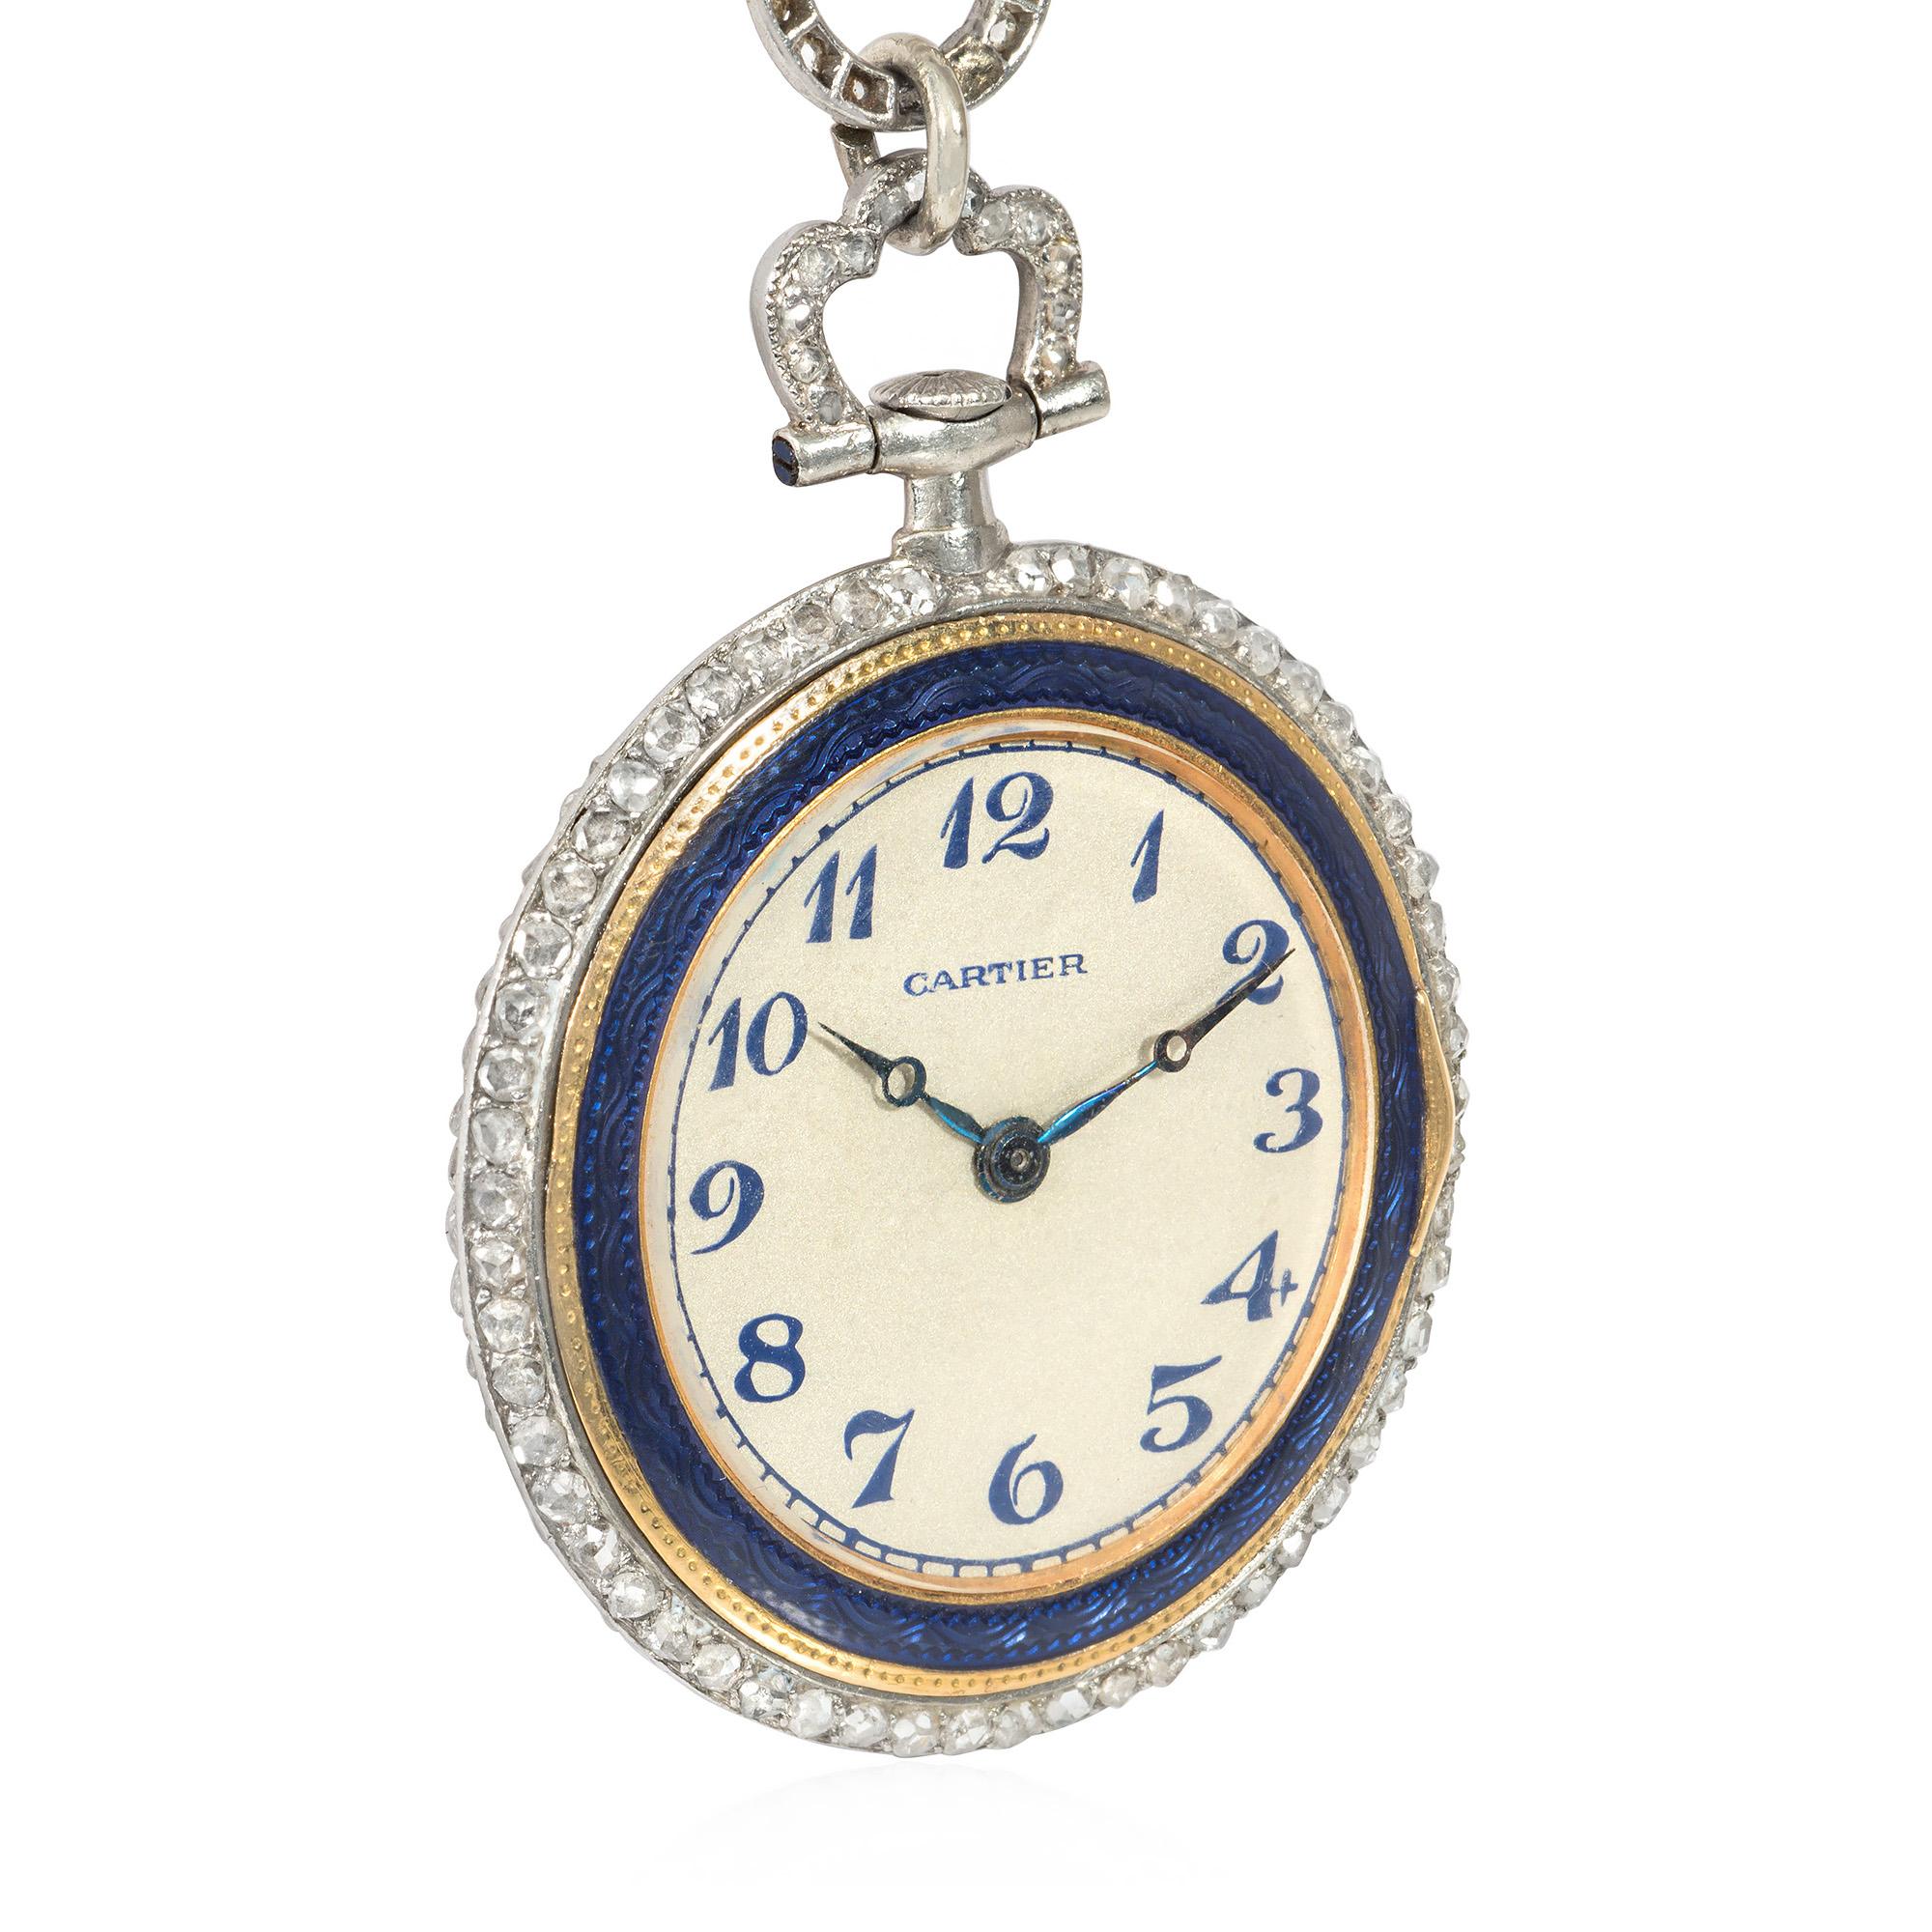 Belle Époque Cartier Belle Epoque Blue Enamel, Diamond, and Pearl Pendant Watch on Chain